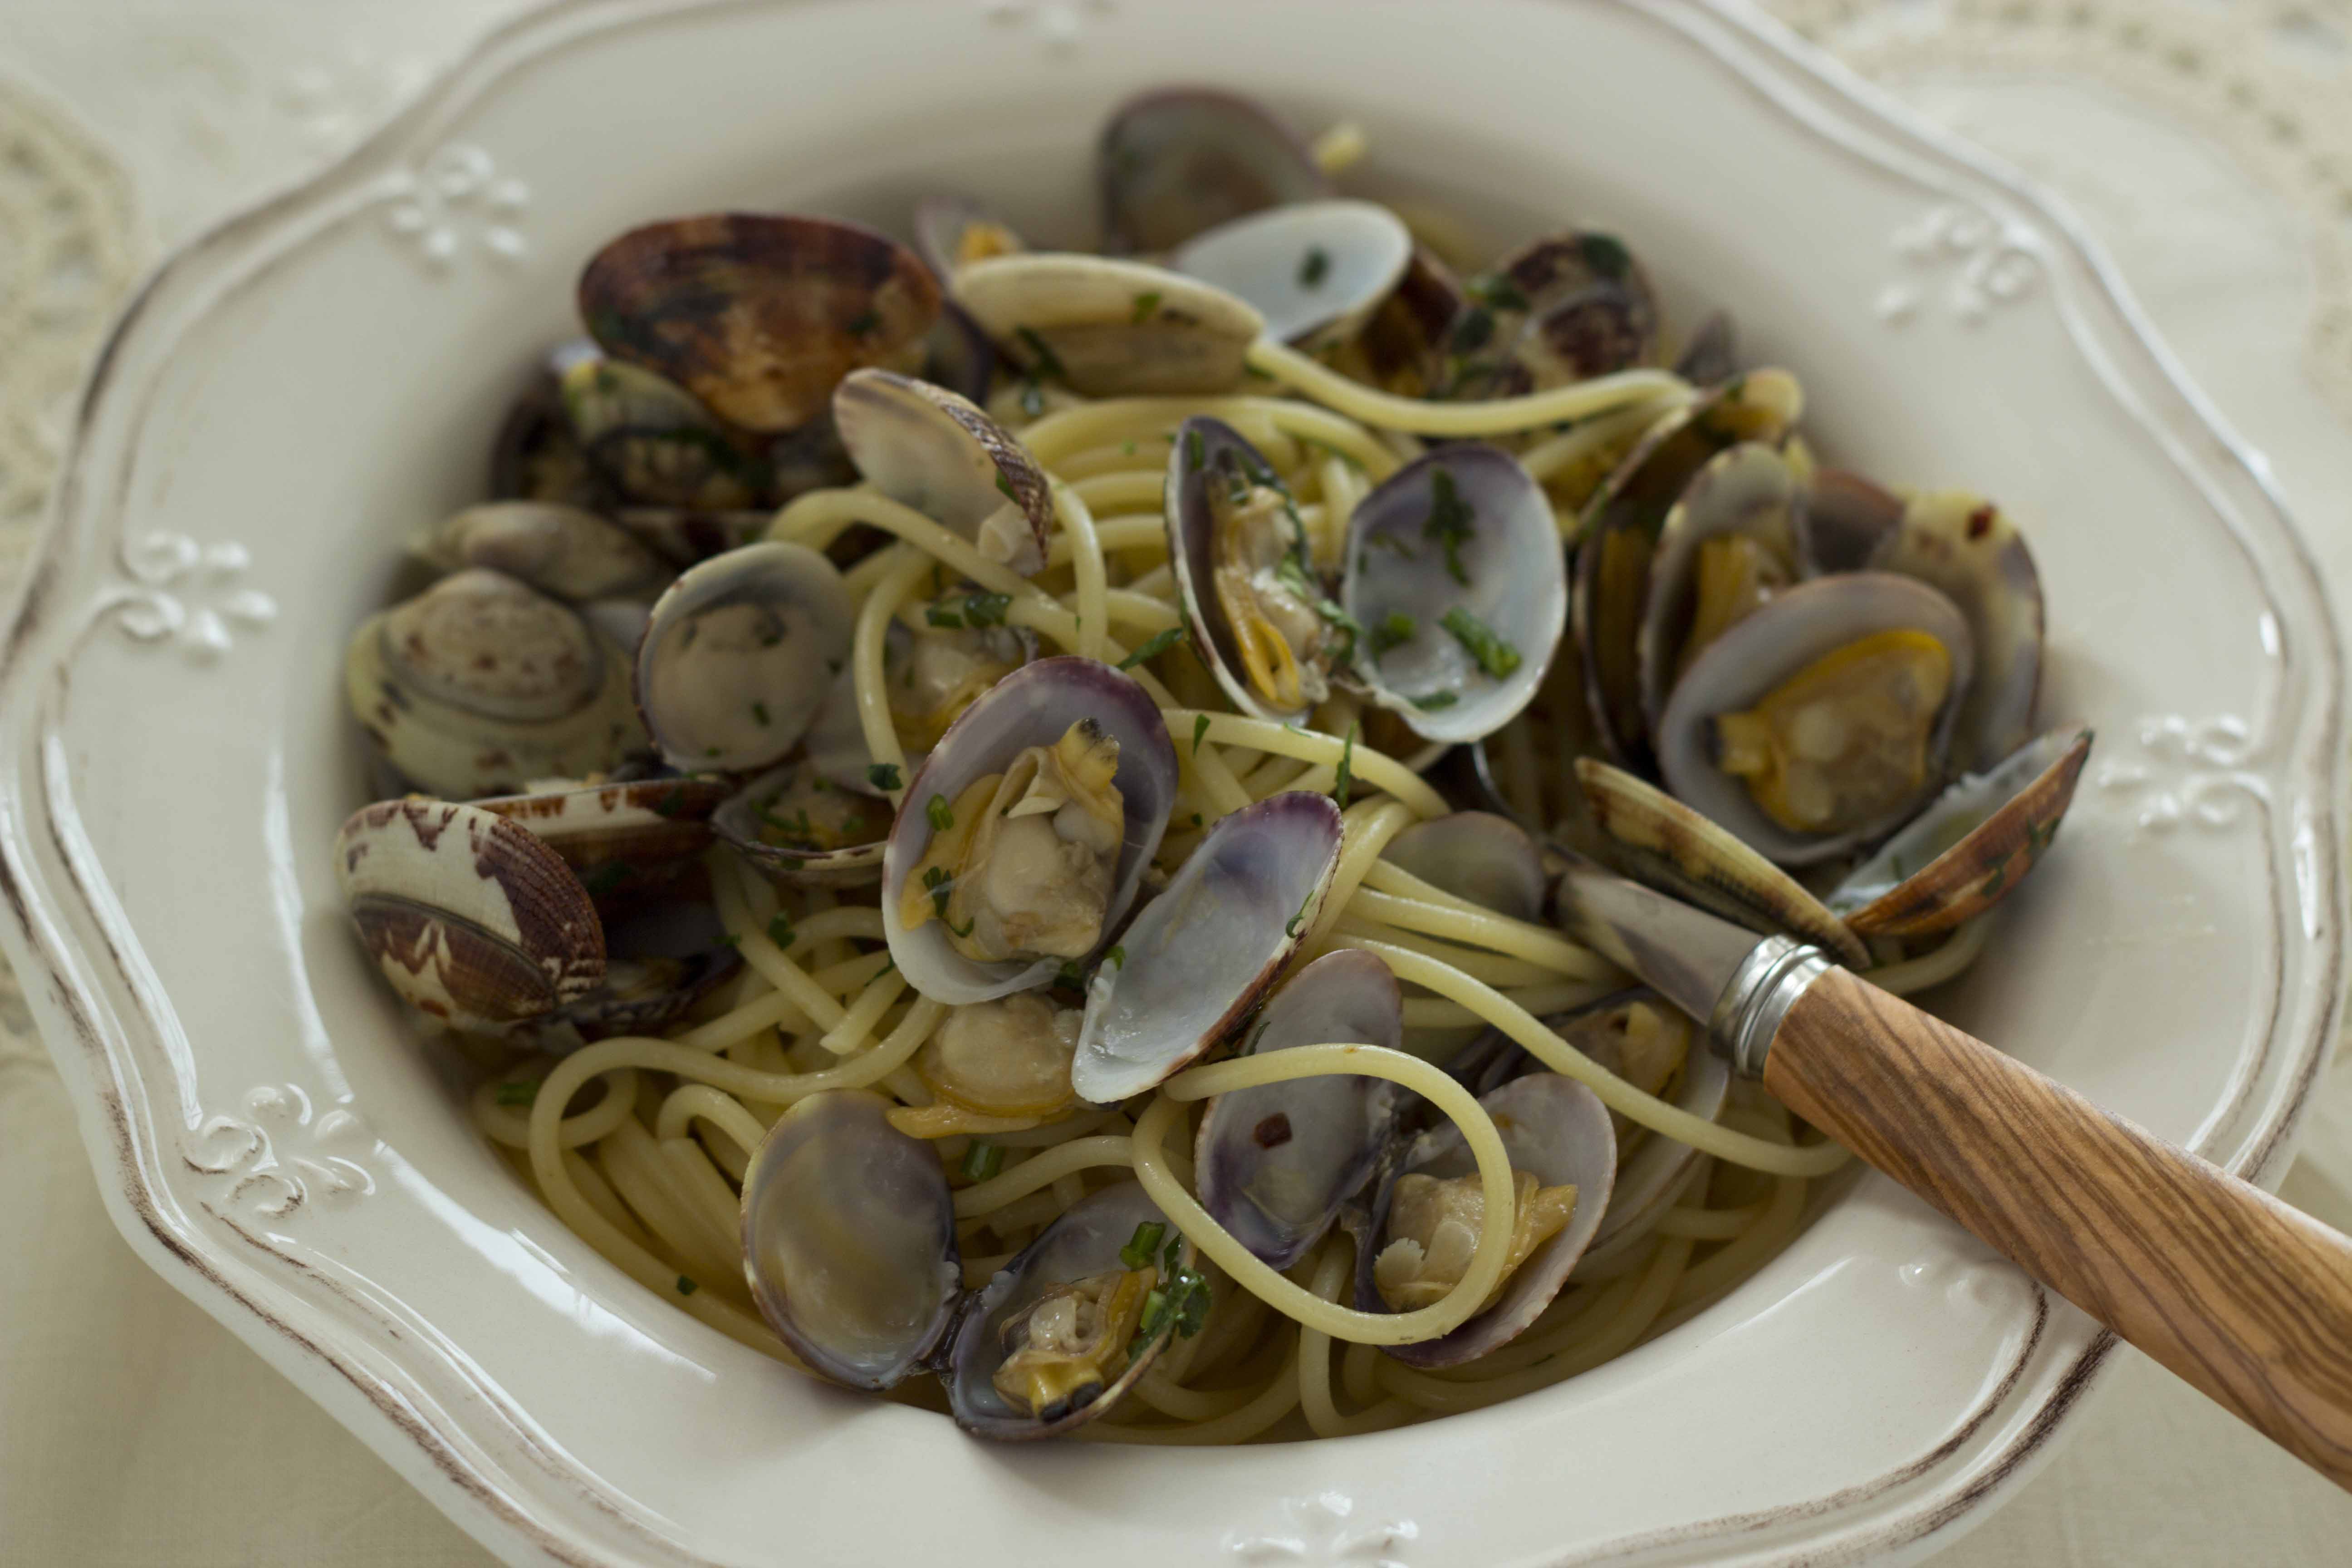 Spaghetti alla vongole (spaghetti with clams) is a favourite Italian ...